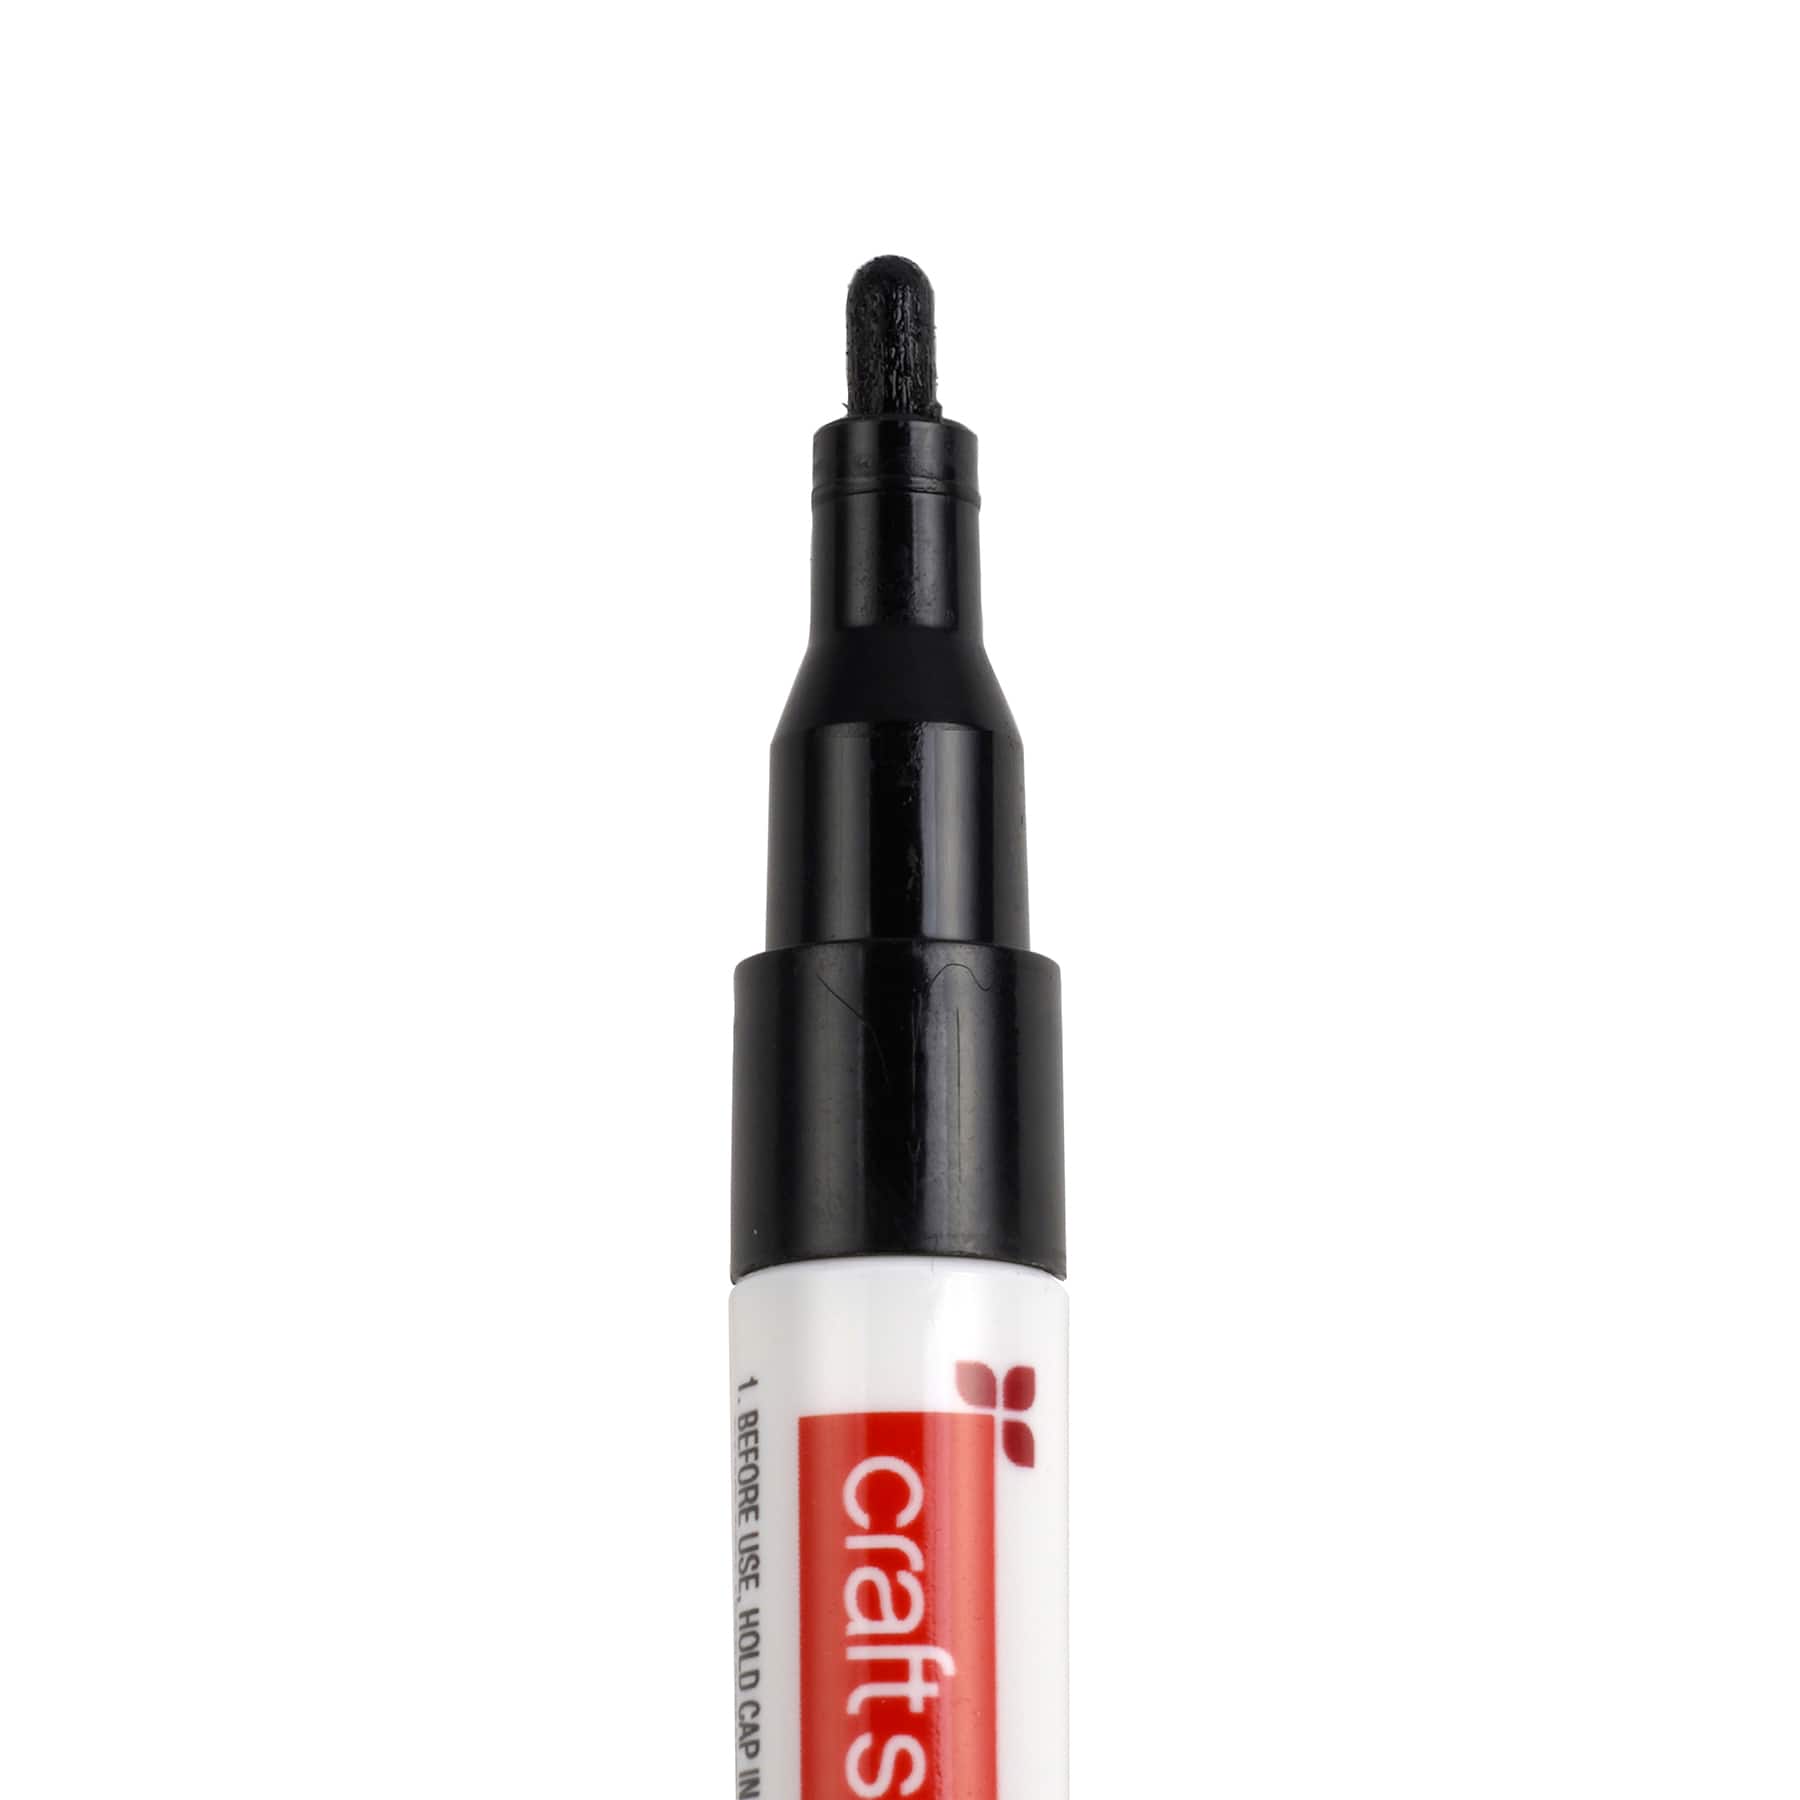 Basic Medium Line 6 Color Paint Pen Set by Craft Smart&#xAE;